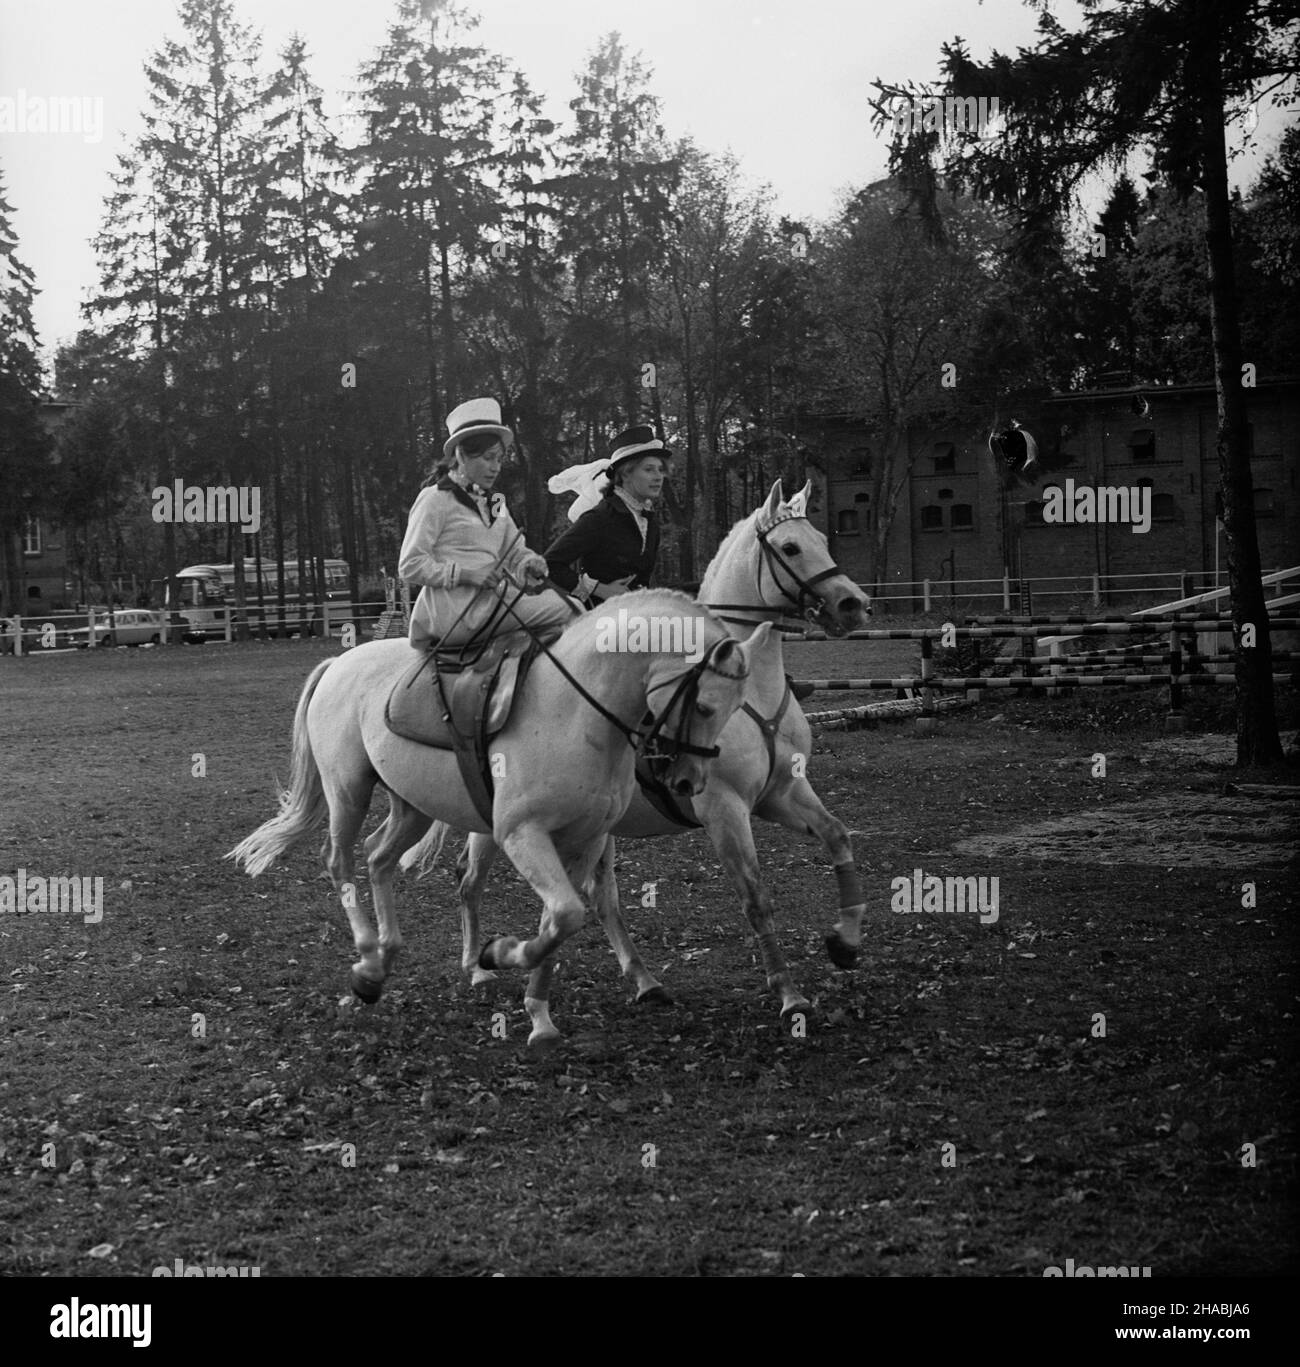 Starogard Gdañski, 1969-10-28. Aukcja koni czystej krwi arabskiej w Pañstwowym Stadzie Ogierów (PSO) w Starogardzie Gdañskim, zorganizowana w dniach 28 - 29 paŸdziernika 1969 r. Pokaz jeŸdŸców w historycznych kostiumach - prezentowany w pierwszym dniu aukcji. mb  PAP/Zbigniew Staszyszyn      Starogard Gdanski, Oct. 28, 1969. Auction of Arab horses organised in the State Stallion Stud in Starogard Gdanski on Oct. 28 to 29, 1969. Pictured: a riding show with riders in historical costumes on the first day of the auction.   mb  PAP/Zbigniew Staszyszyn Stock Photo